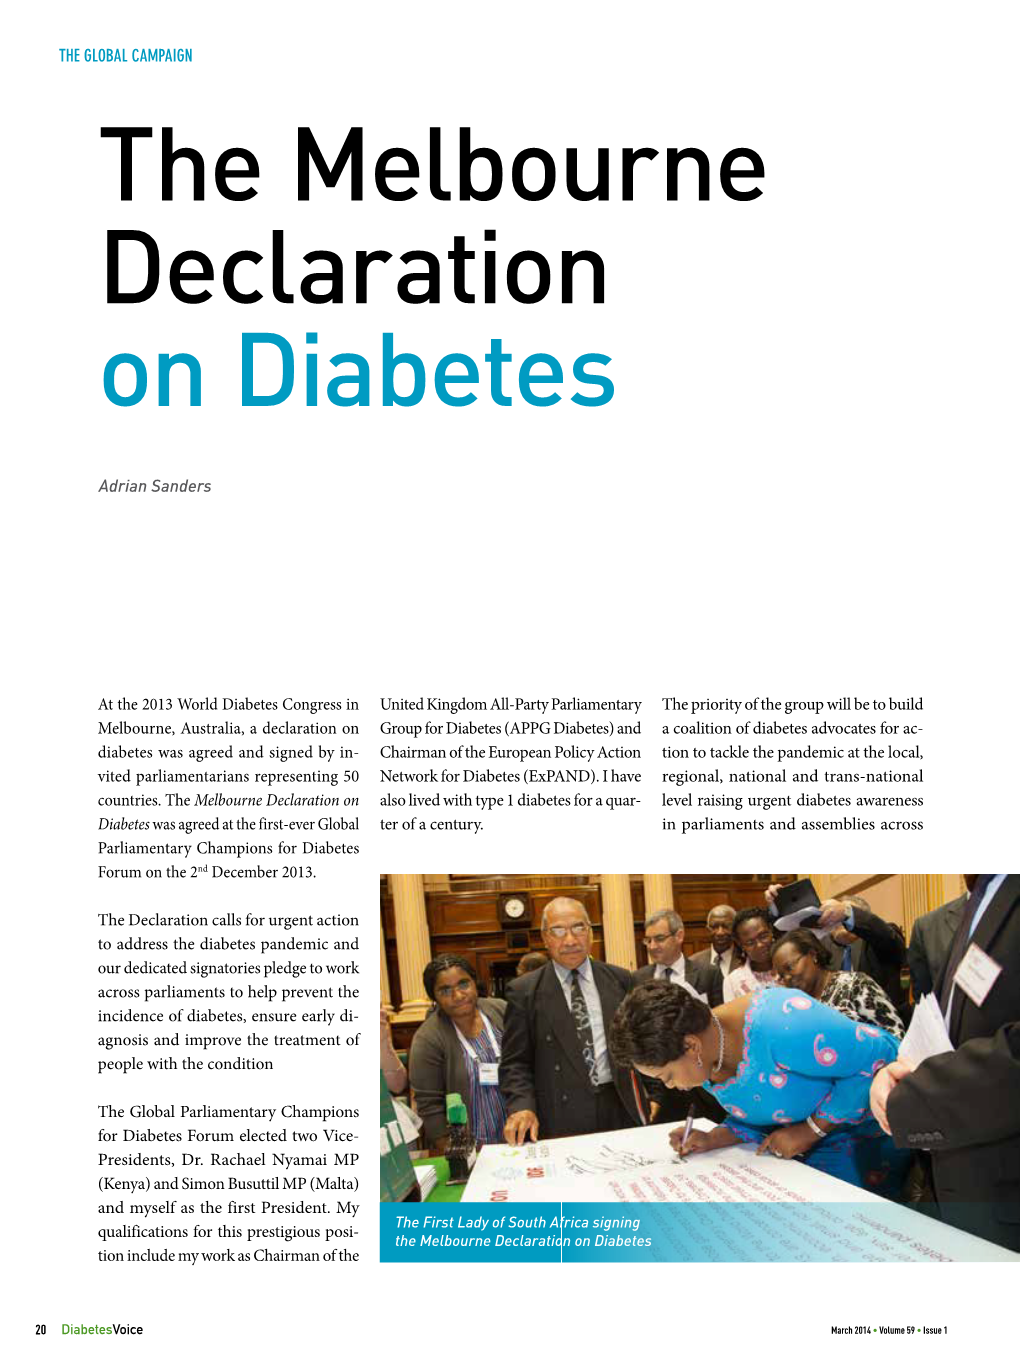 The Melbourne Declaration on Diabetes